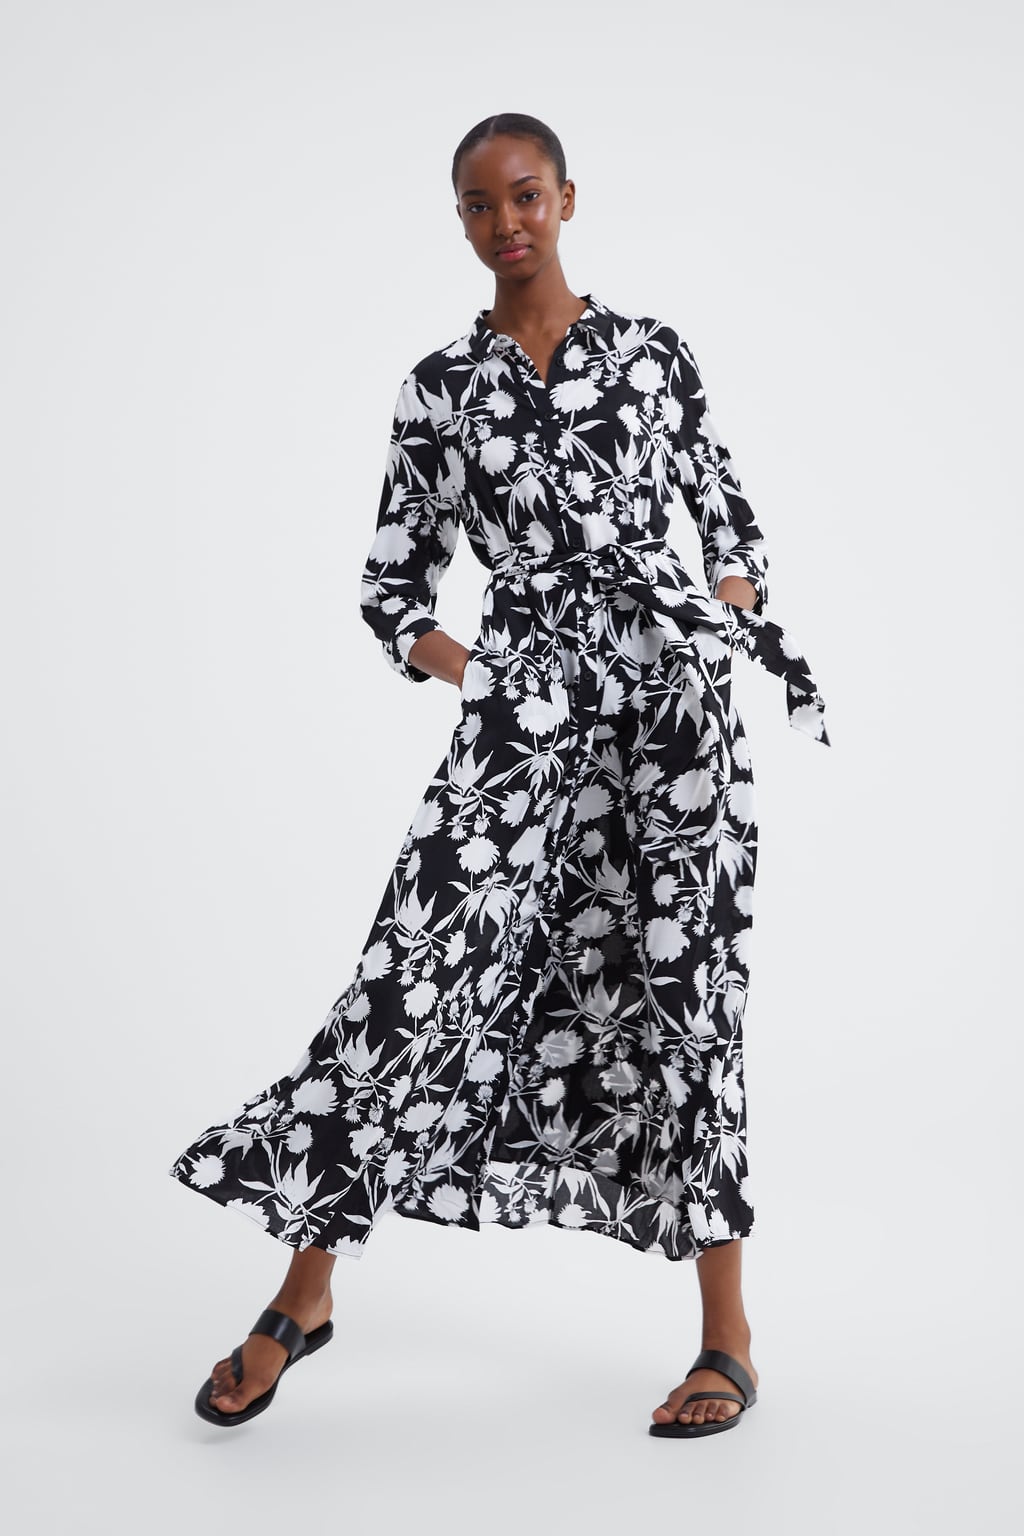 Vestidos Zara primavera 2019, las tendencias para renovar el armario - Modalia.es